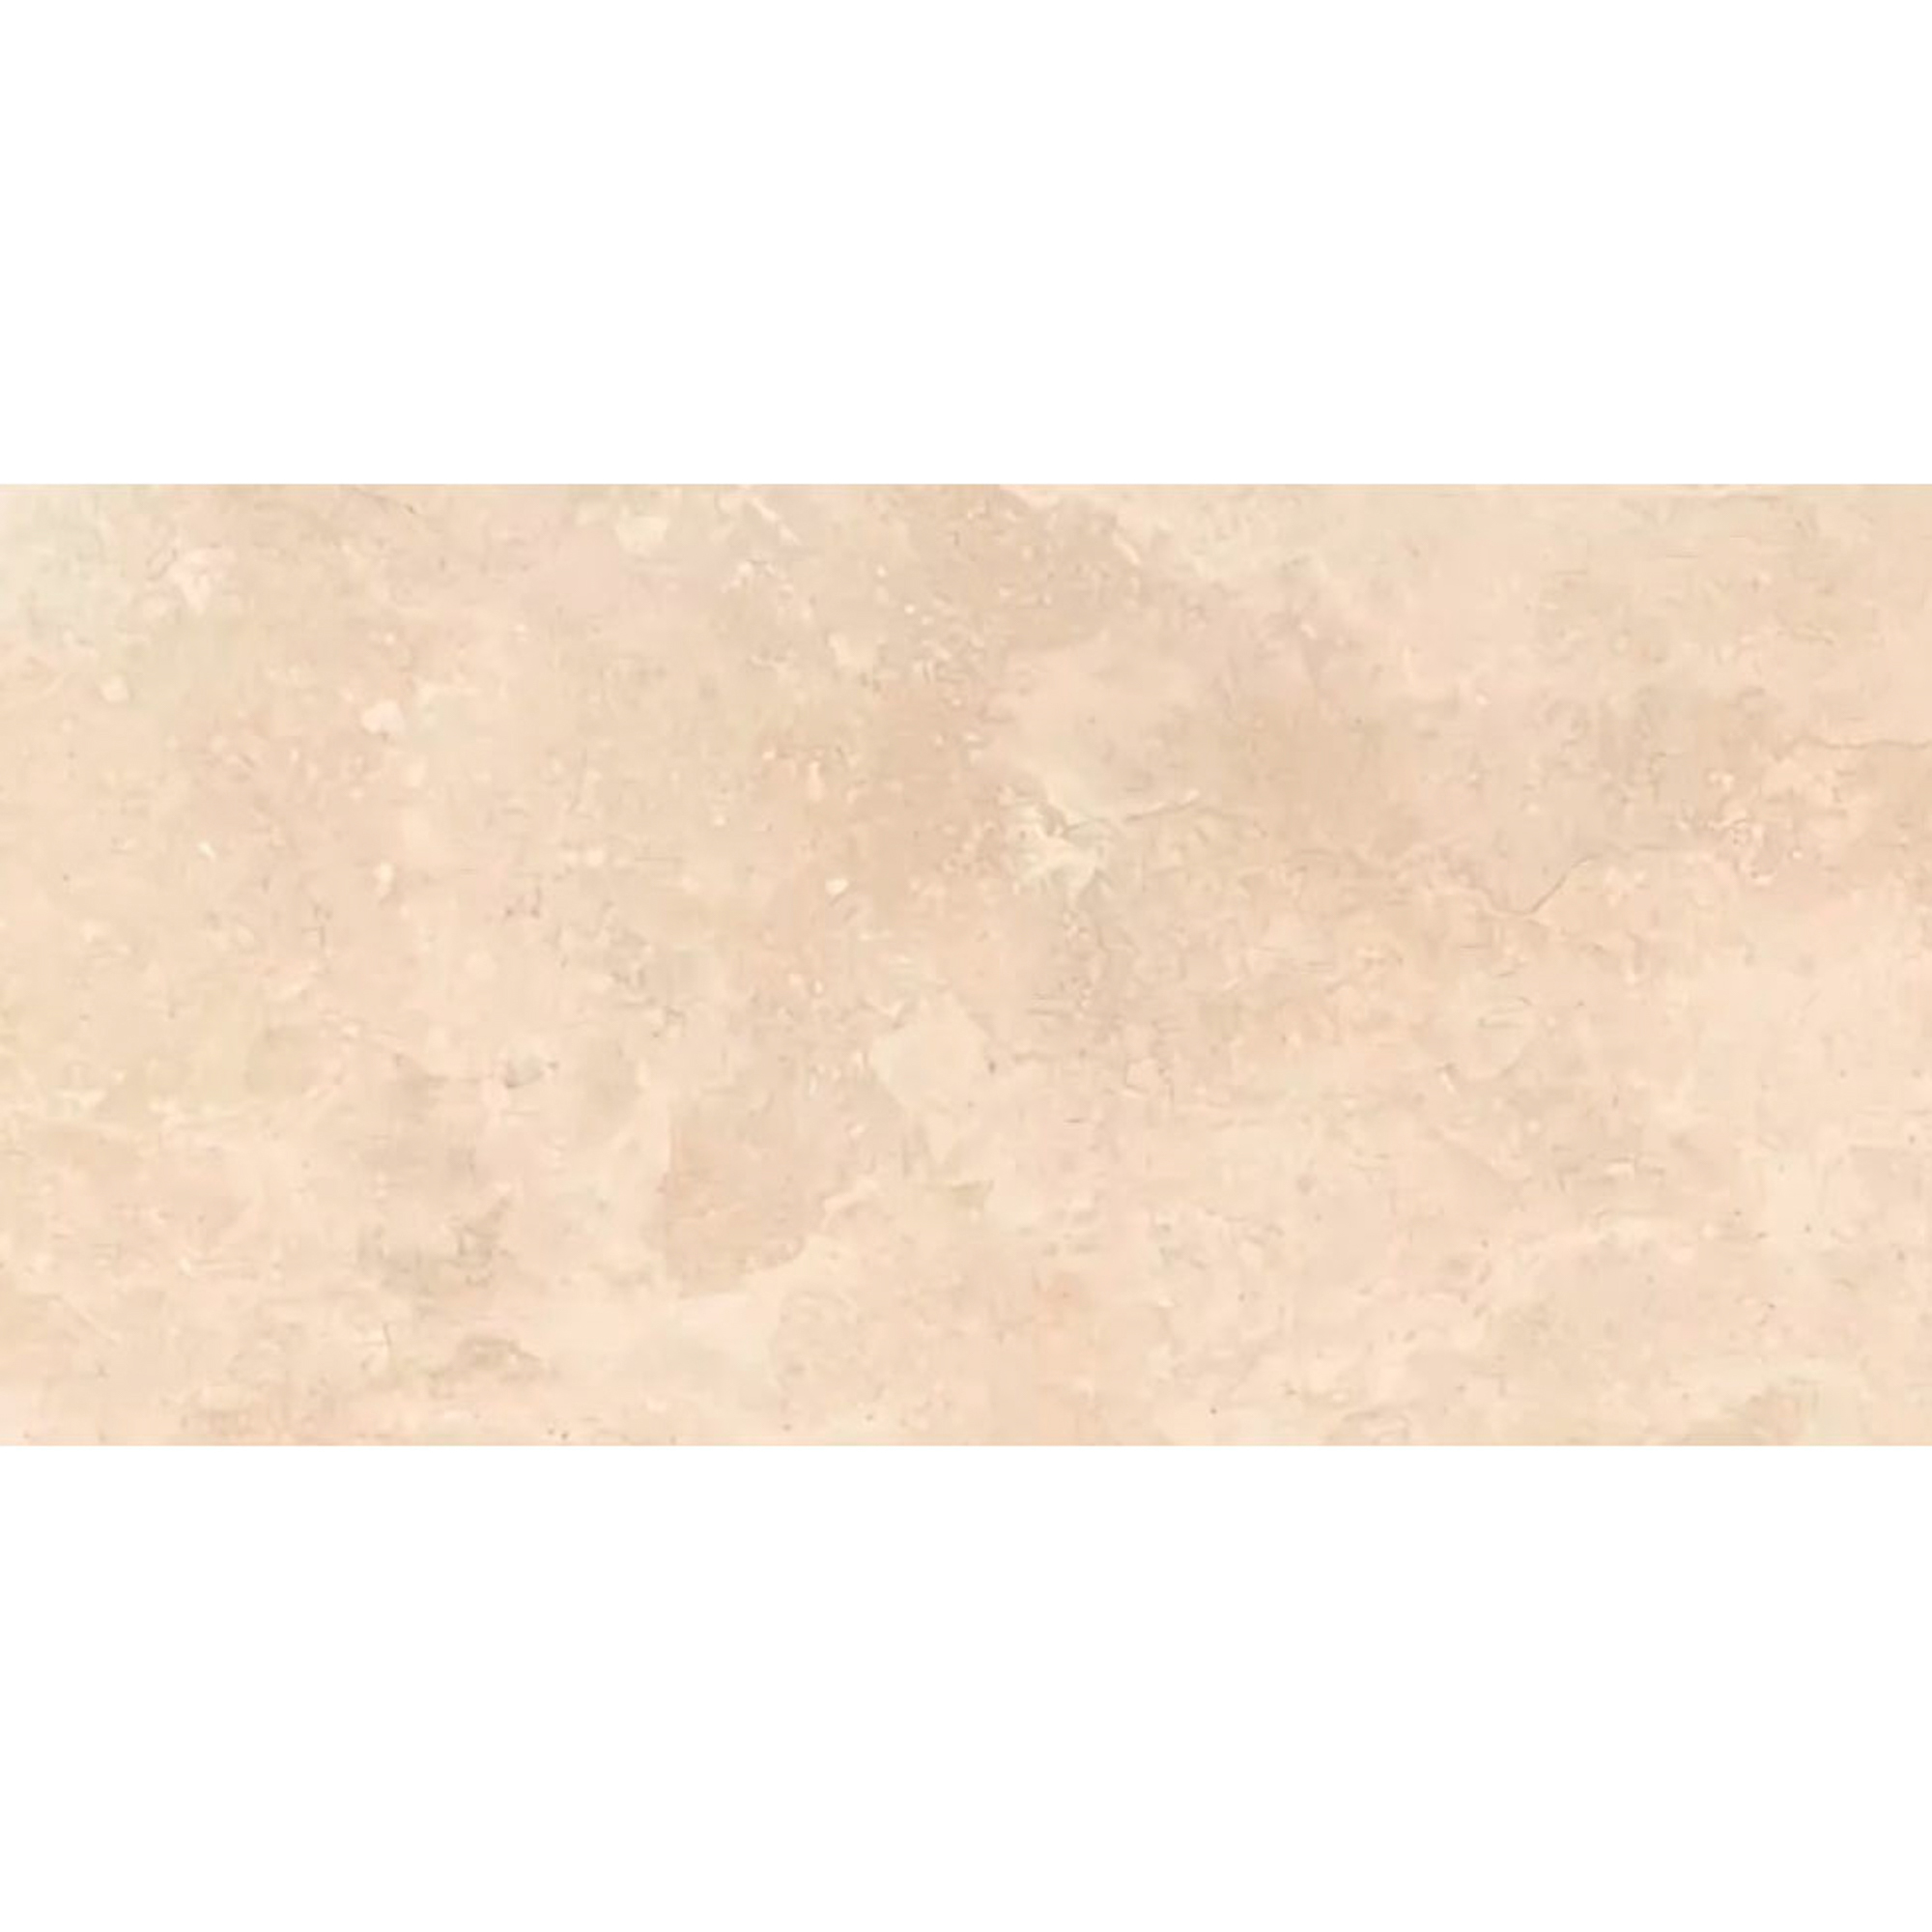 Плитка Kerlife Pietra 1C Beige 63x31,5 см плитка керлайф pietra collage beige 1c 31 5x63 см